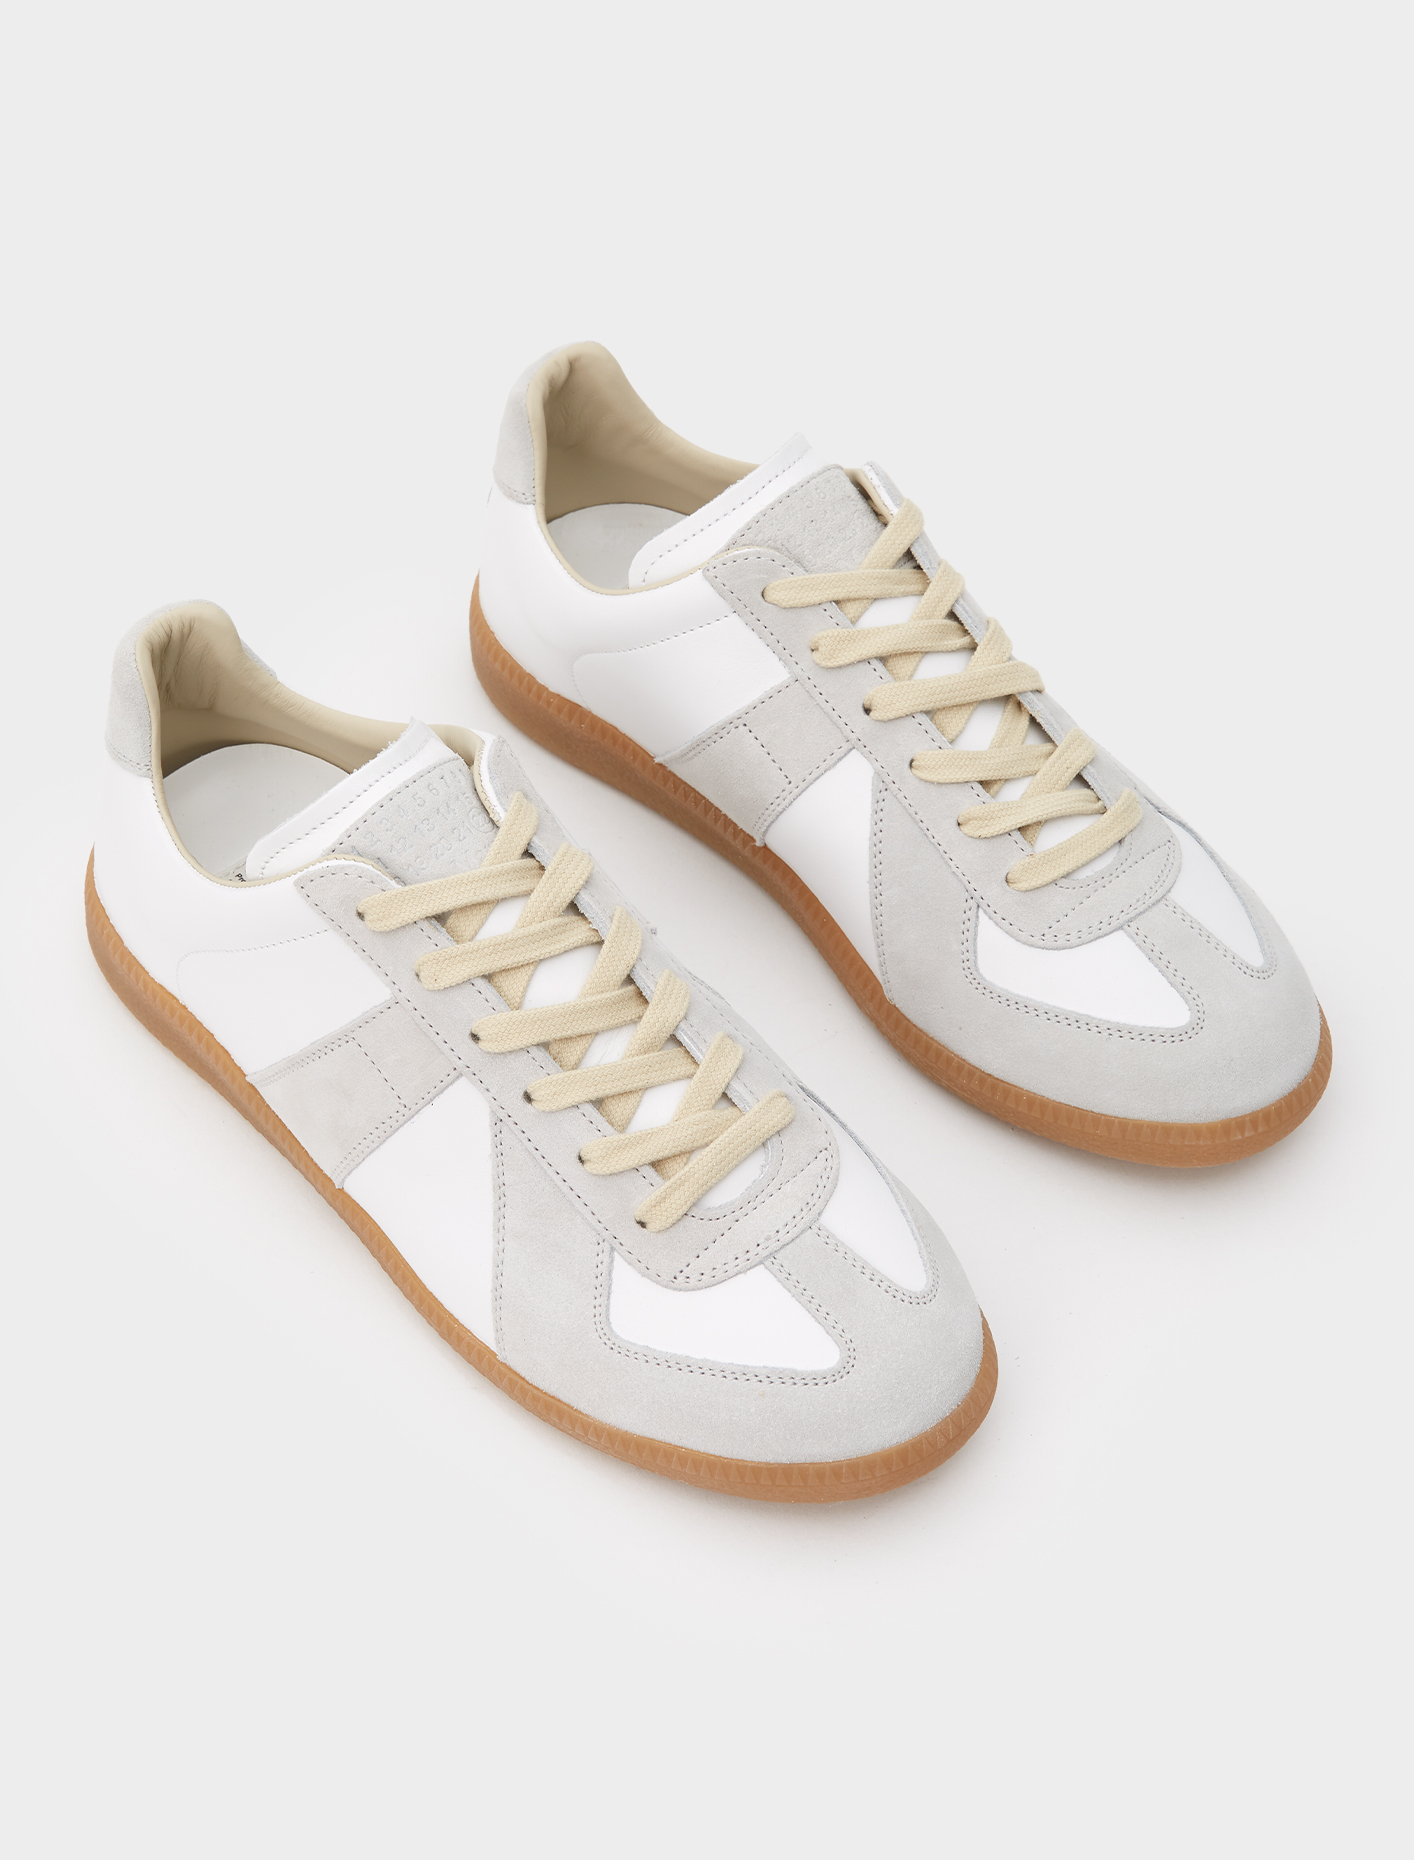 Maison Margiela Replica Sneaker in Off White | Voo Store Berlin ...